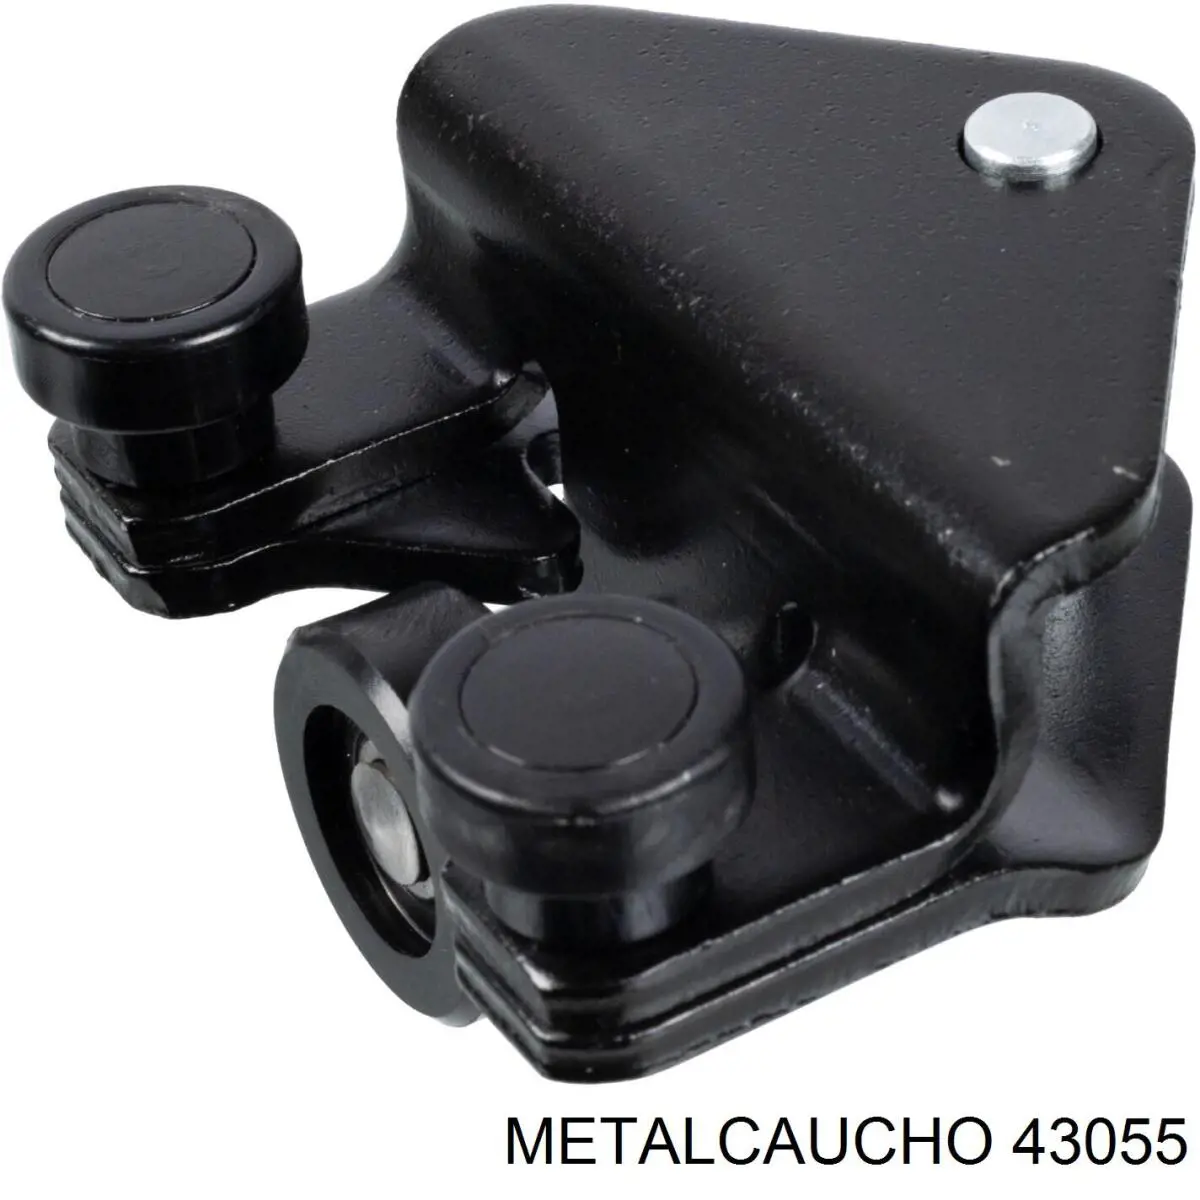 43055 Metalcaucho ролик двери боковой (сдвижной правый нижний)